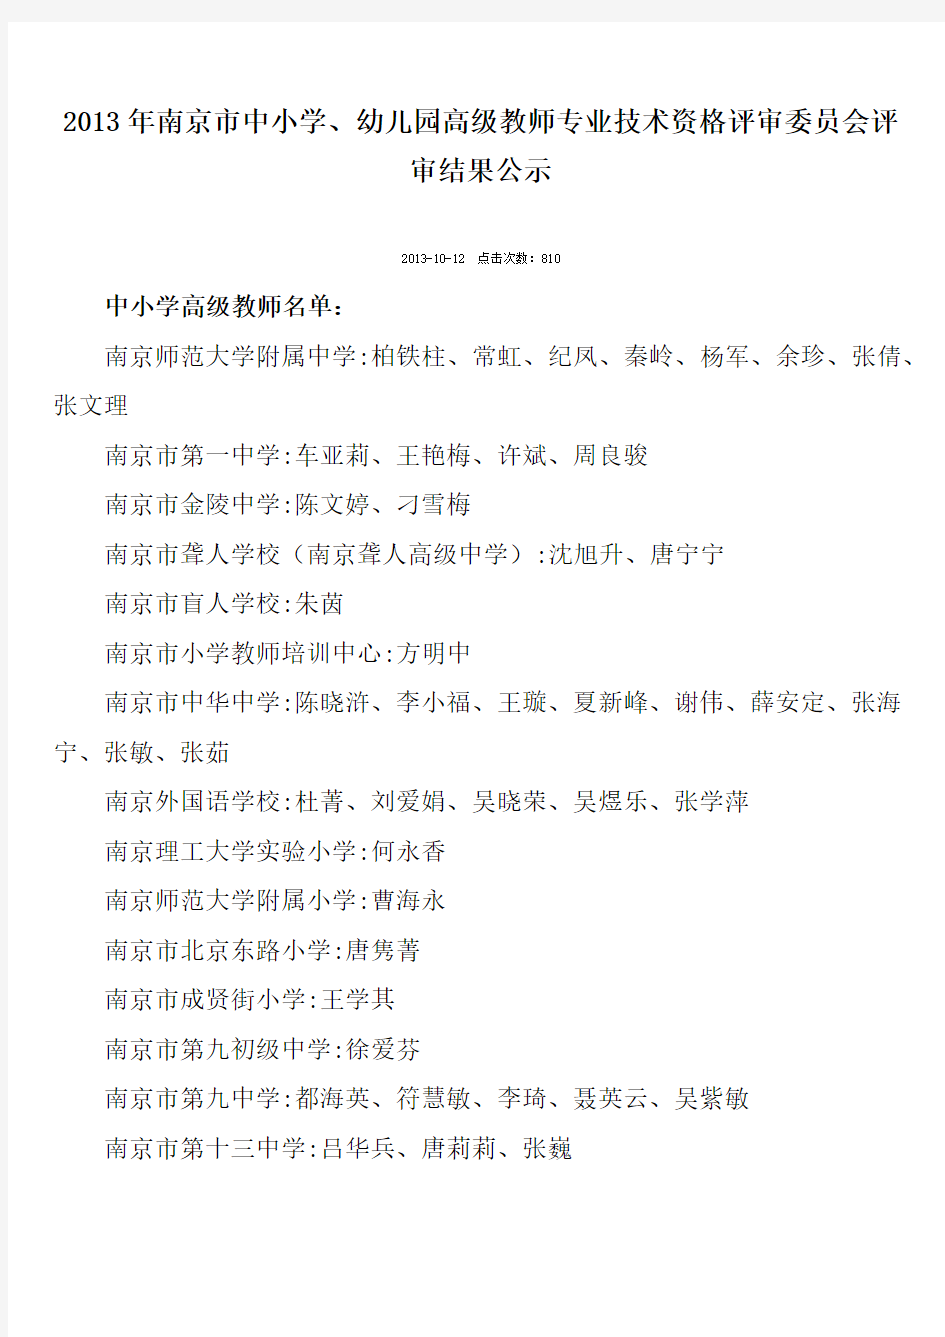 南京市中小学幼儿园高级教师评审了局公示